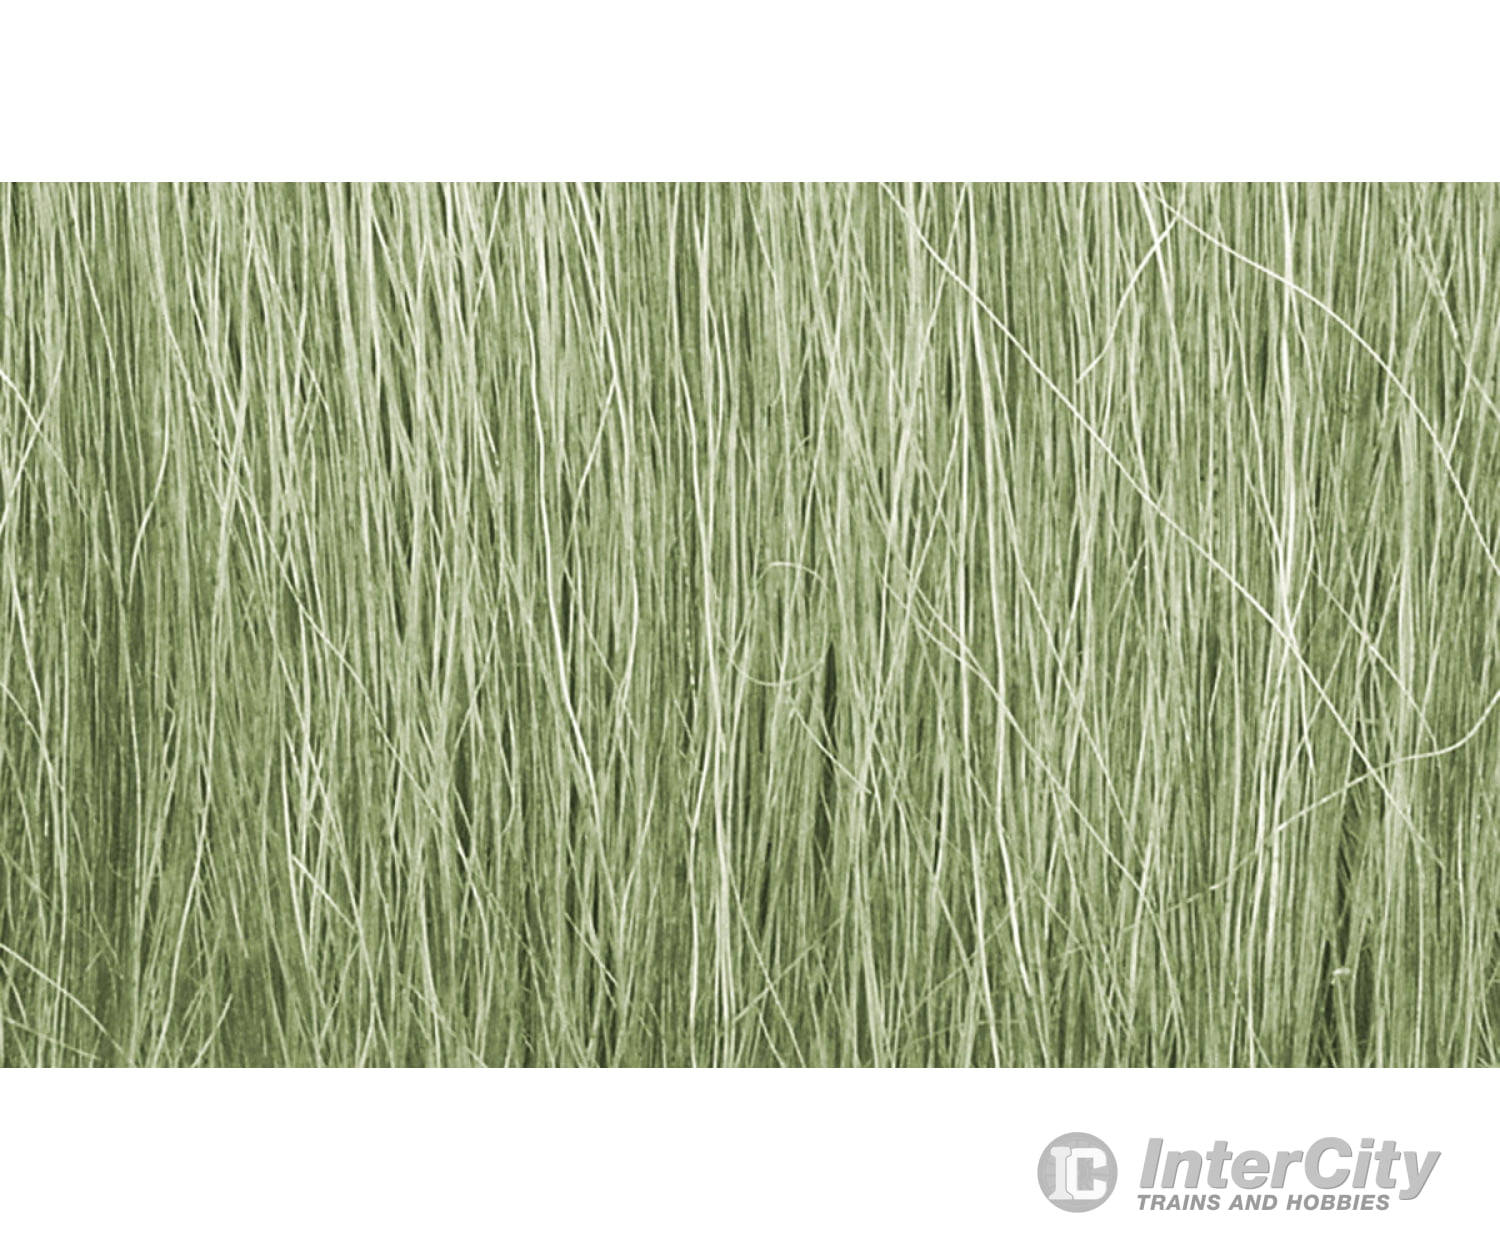 Woodland Scenics 173 Field Grass - Light Green Static Grass & Applicators